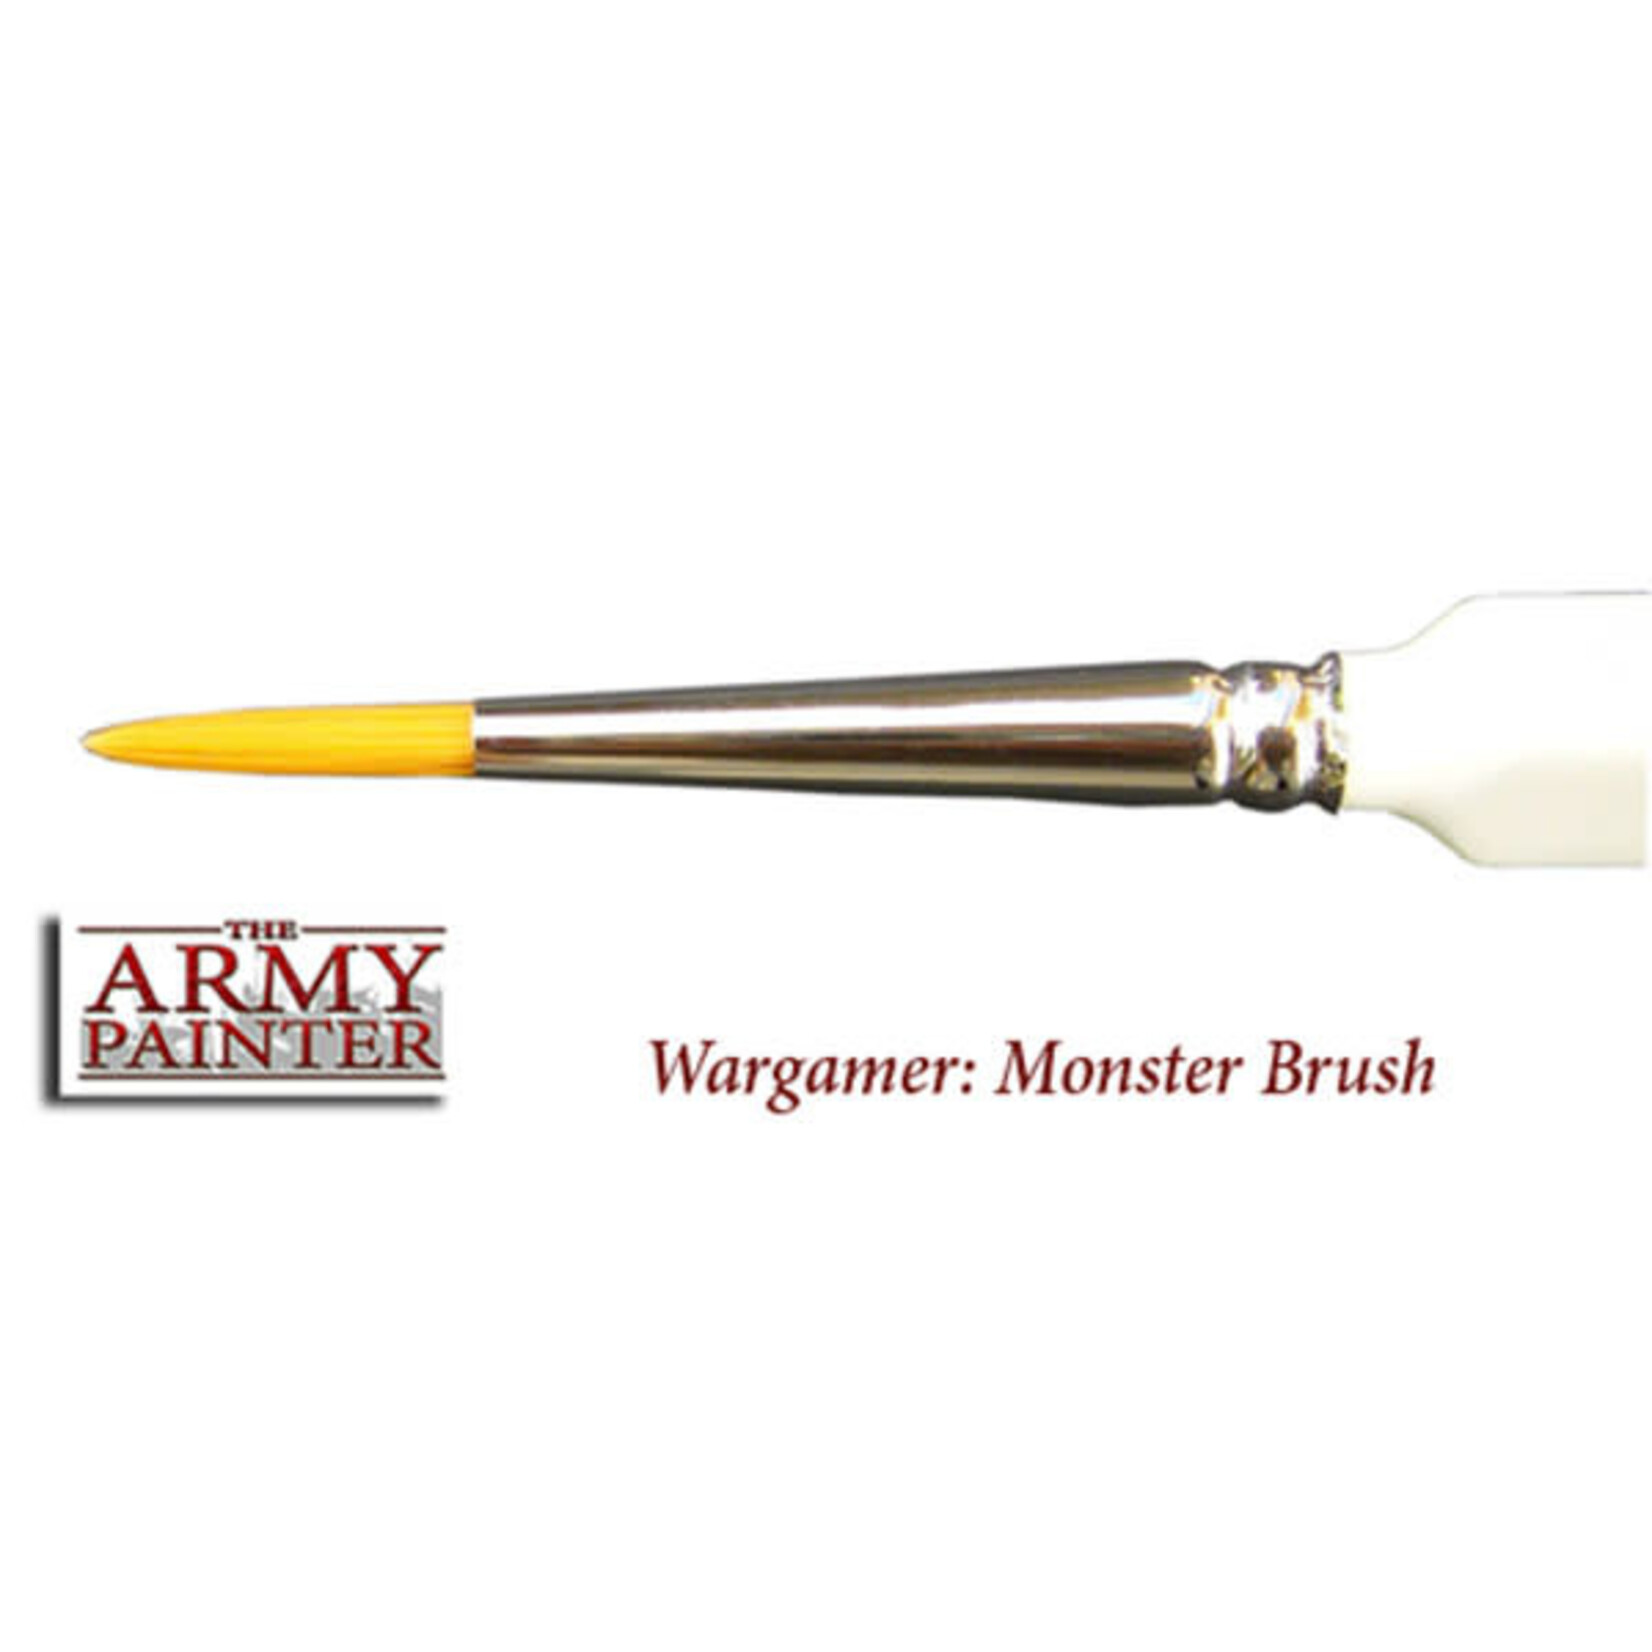 The Army Painter Brush: Wargamer Monster